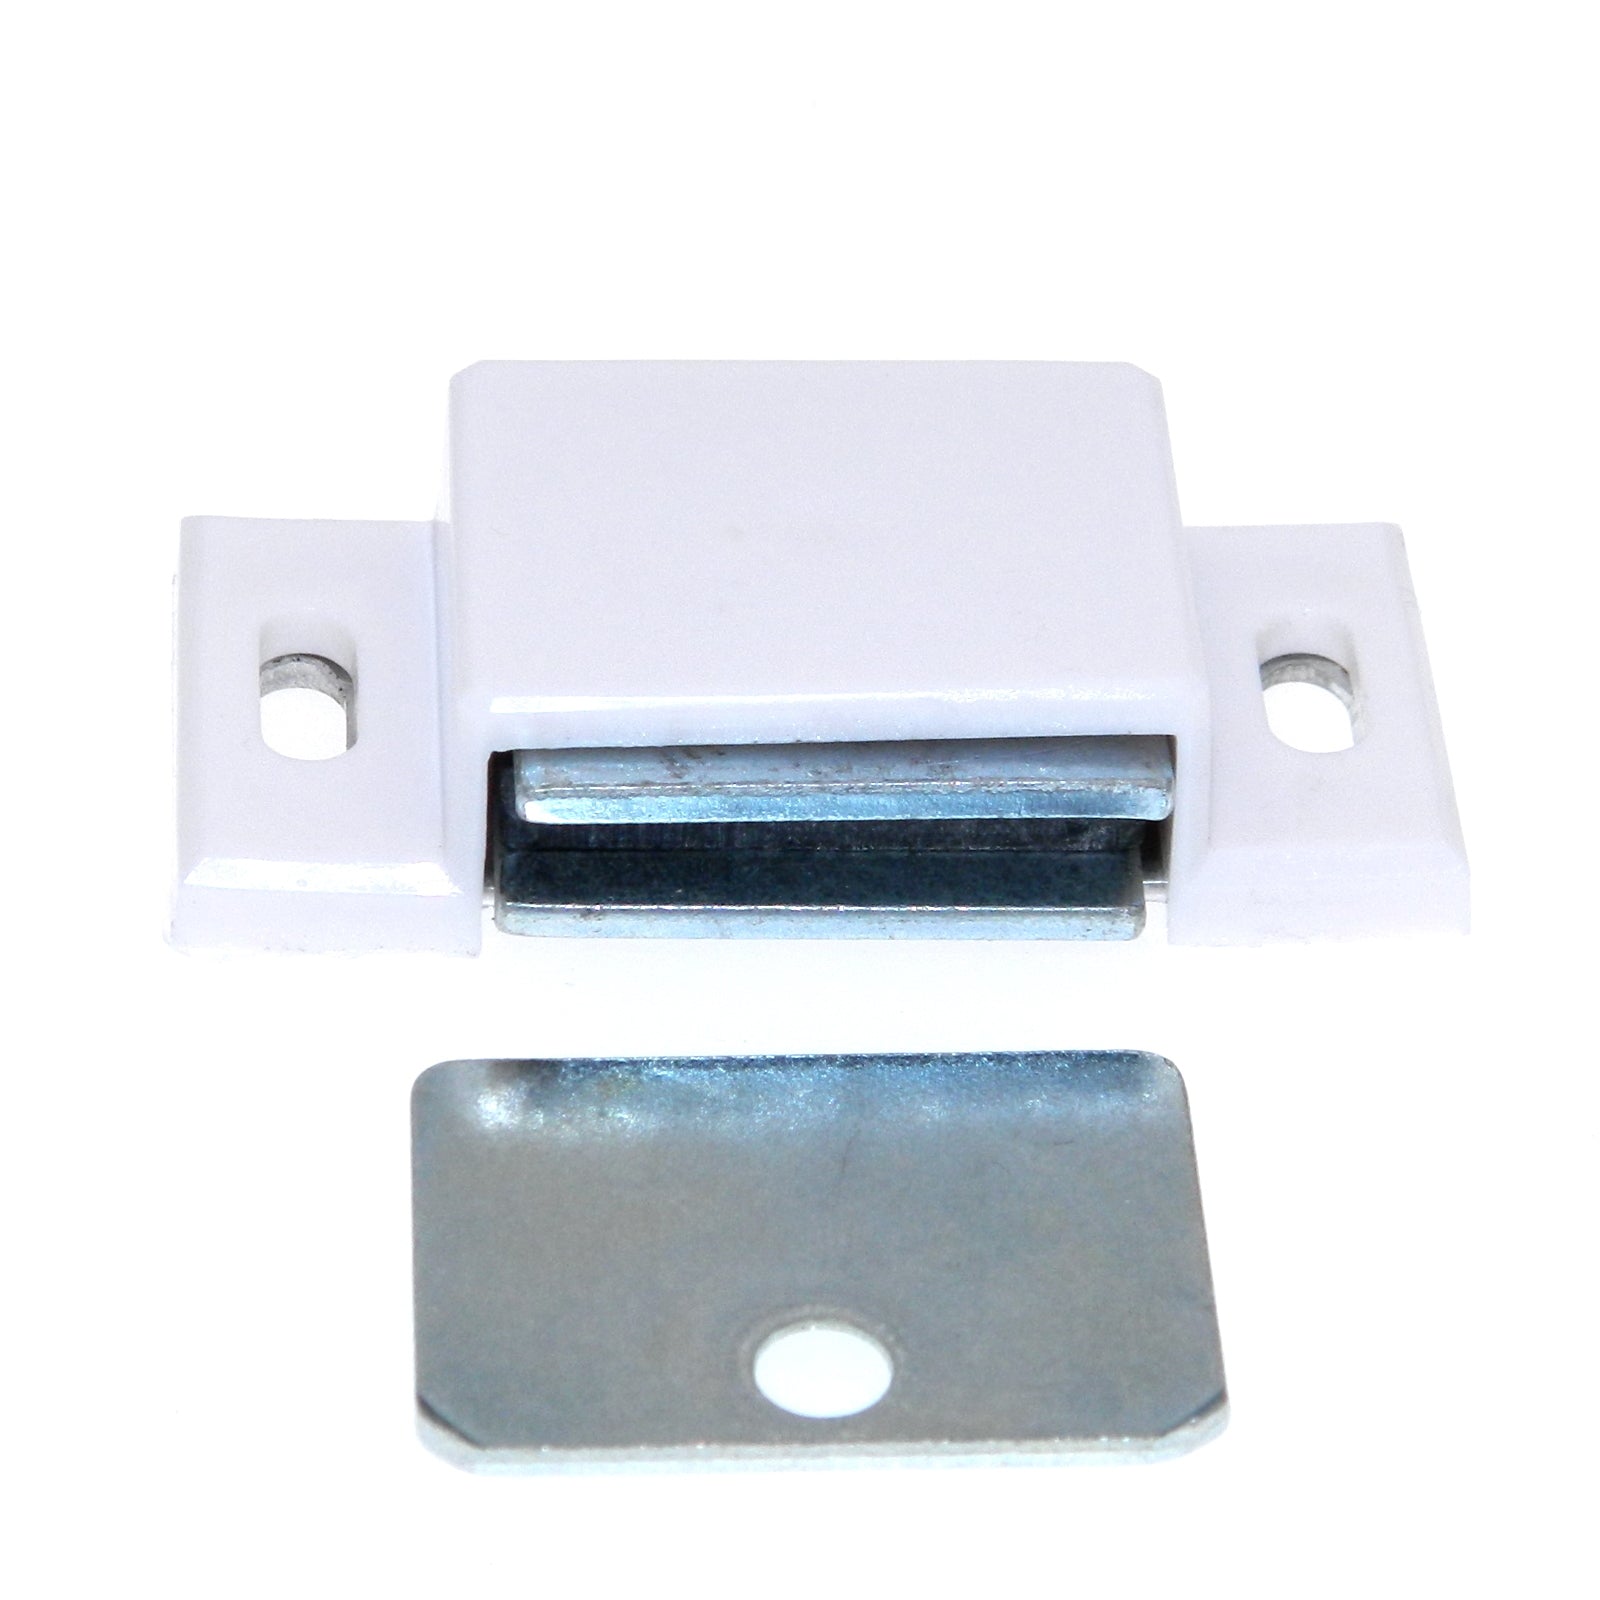 EPCO #1000 Cierre magnético para puerta de gabinete, color blanco, 1 1/2"